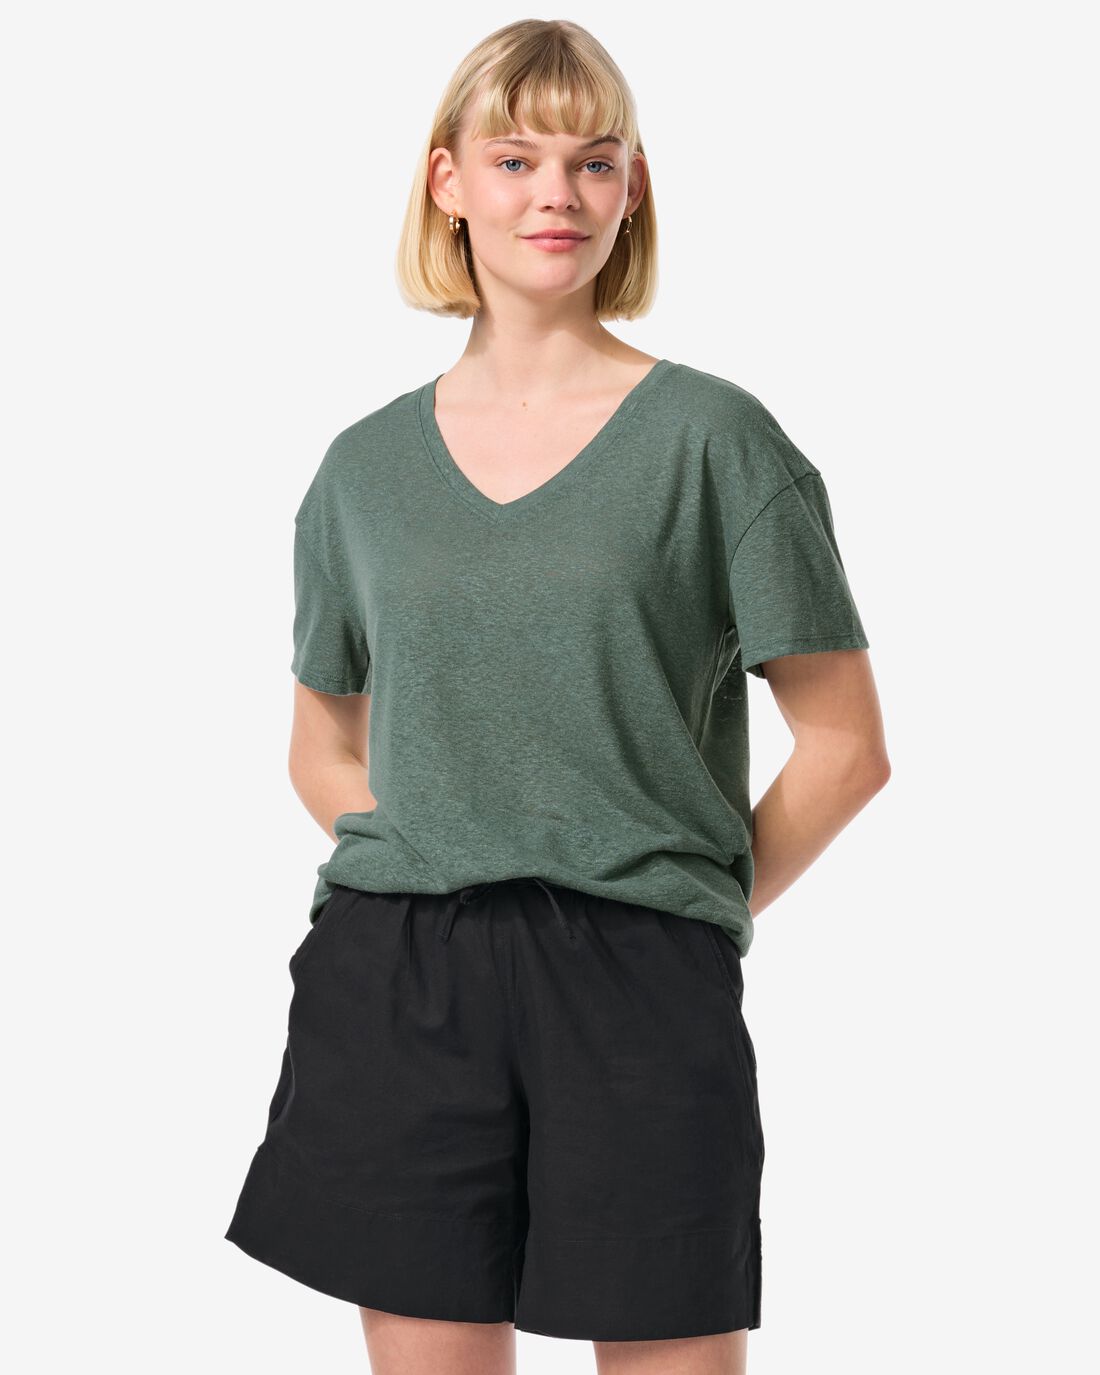 HEMA Dames T-shirt Evie Met Linnen Groen (groen)